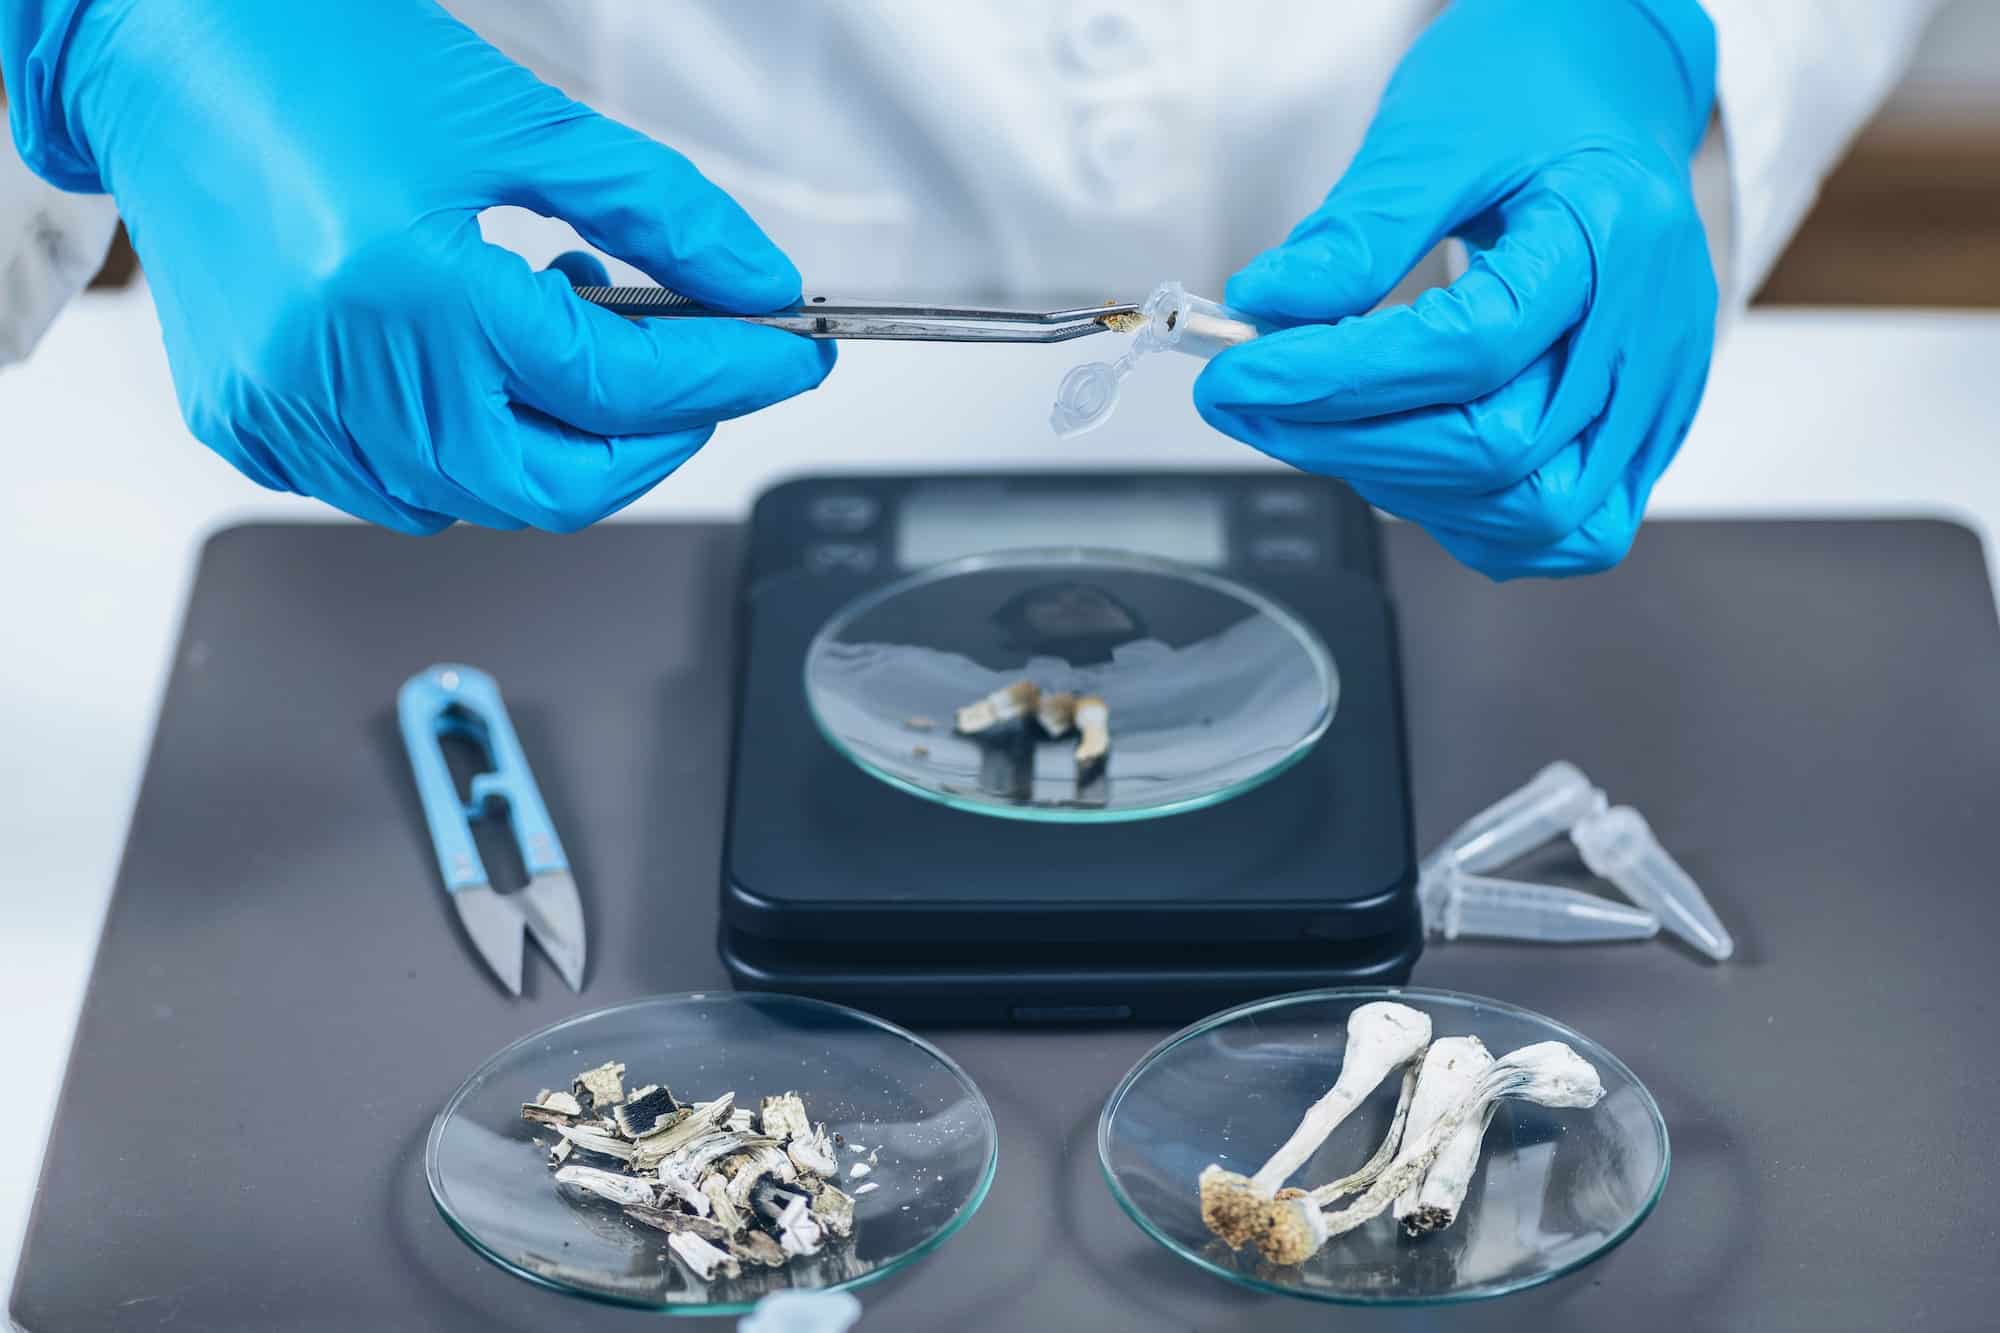 Vorbereitung von Mikrodosen von Psilocybin-Pilzen im wissenschaftlichen Labor für ein Experiment